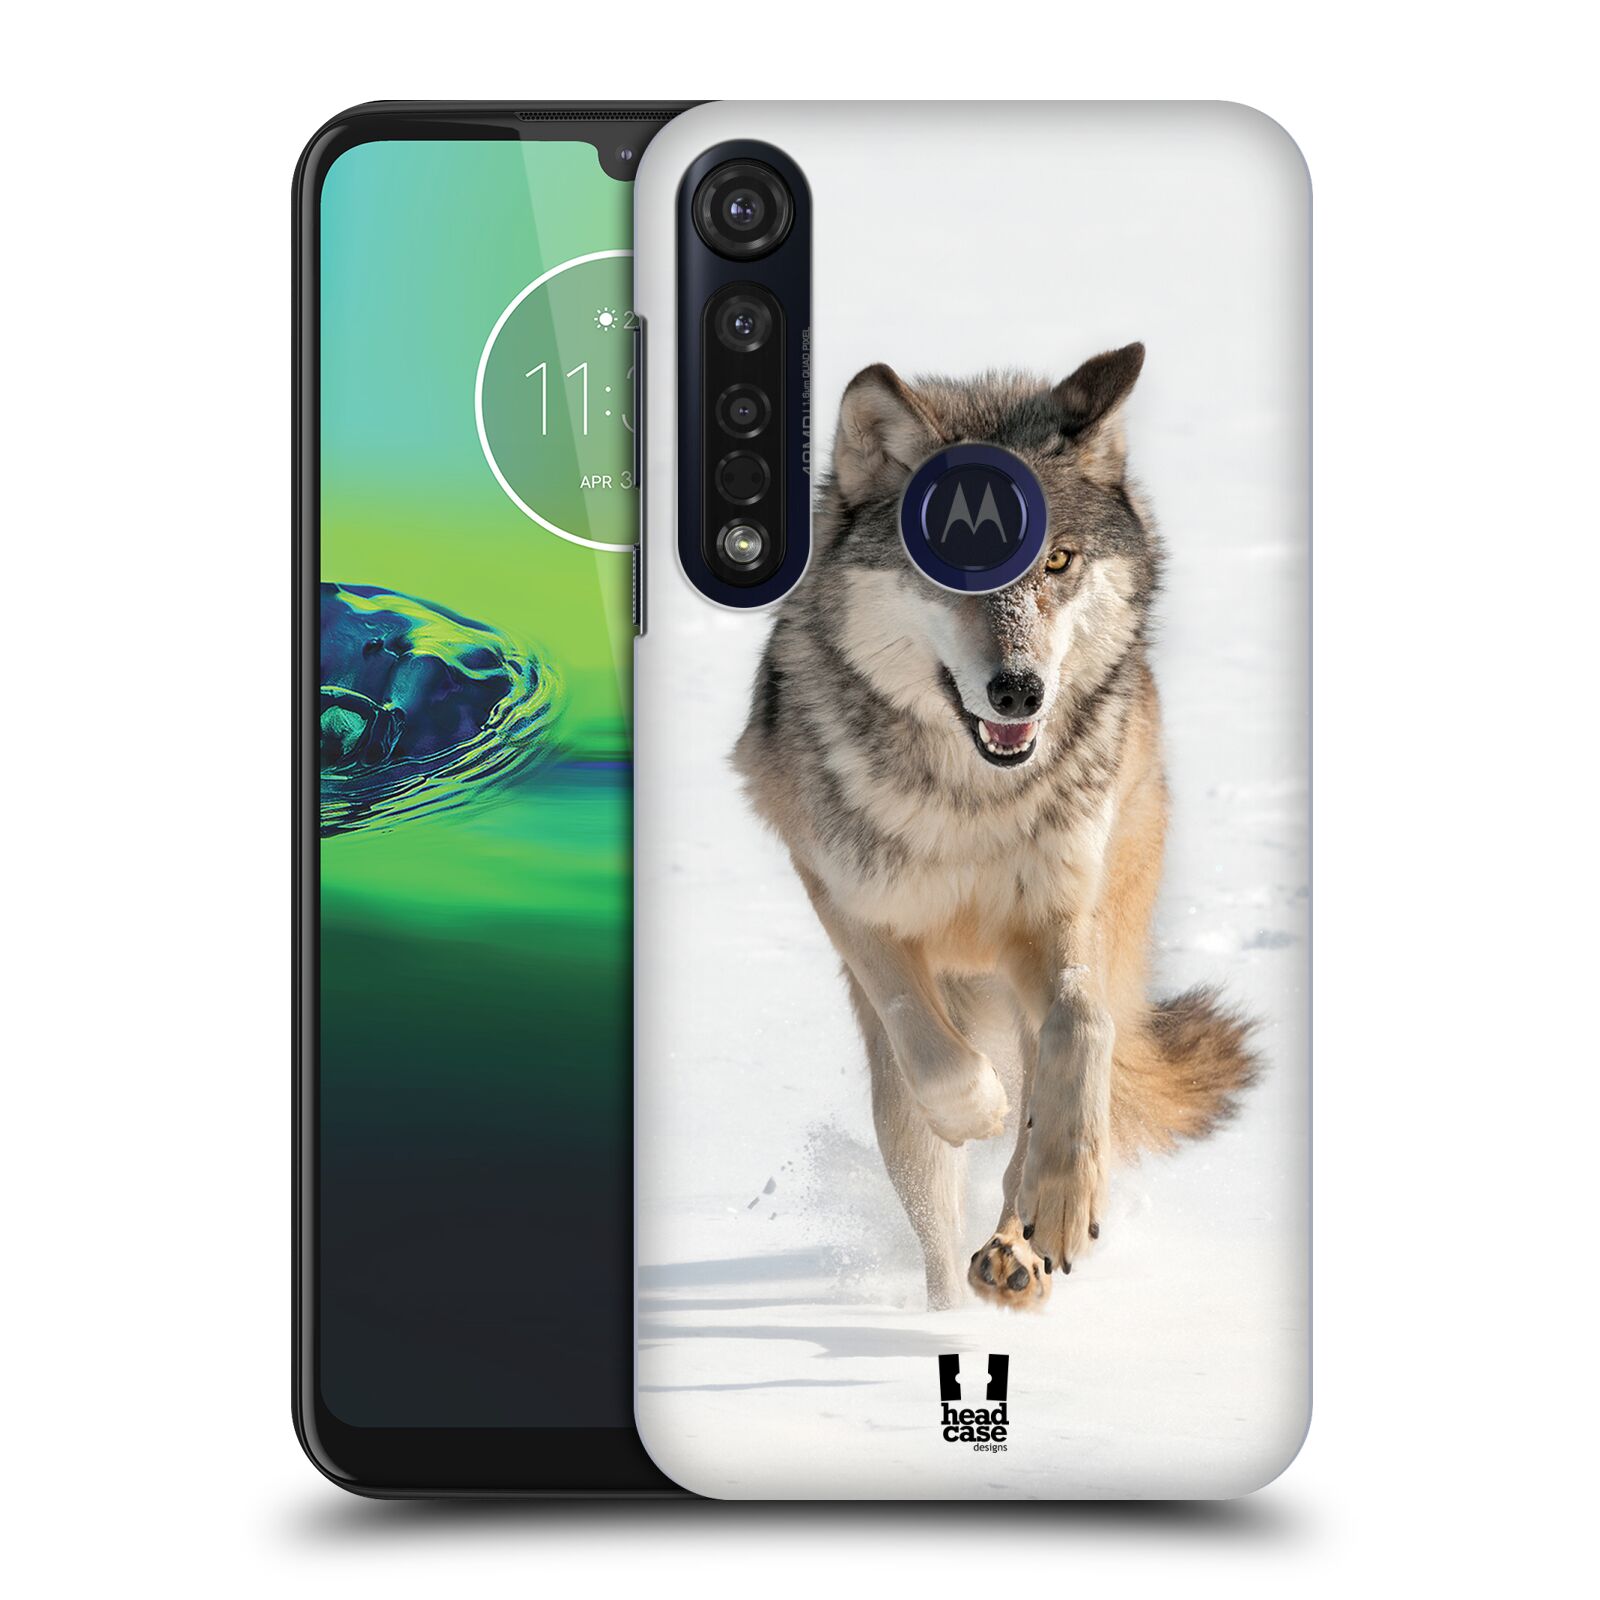 Pouzdro na mobil Motorola Moto G8 PLUS - HEAD CASE - vzor Divočina, Divoký život a zvířata foto BĚŽÍCÍ VLK